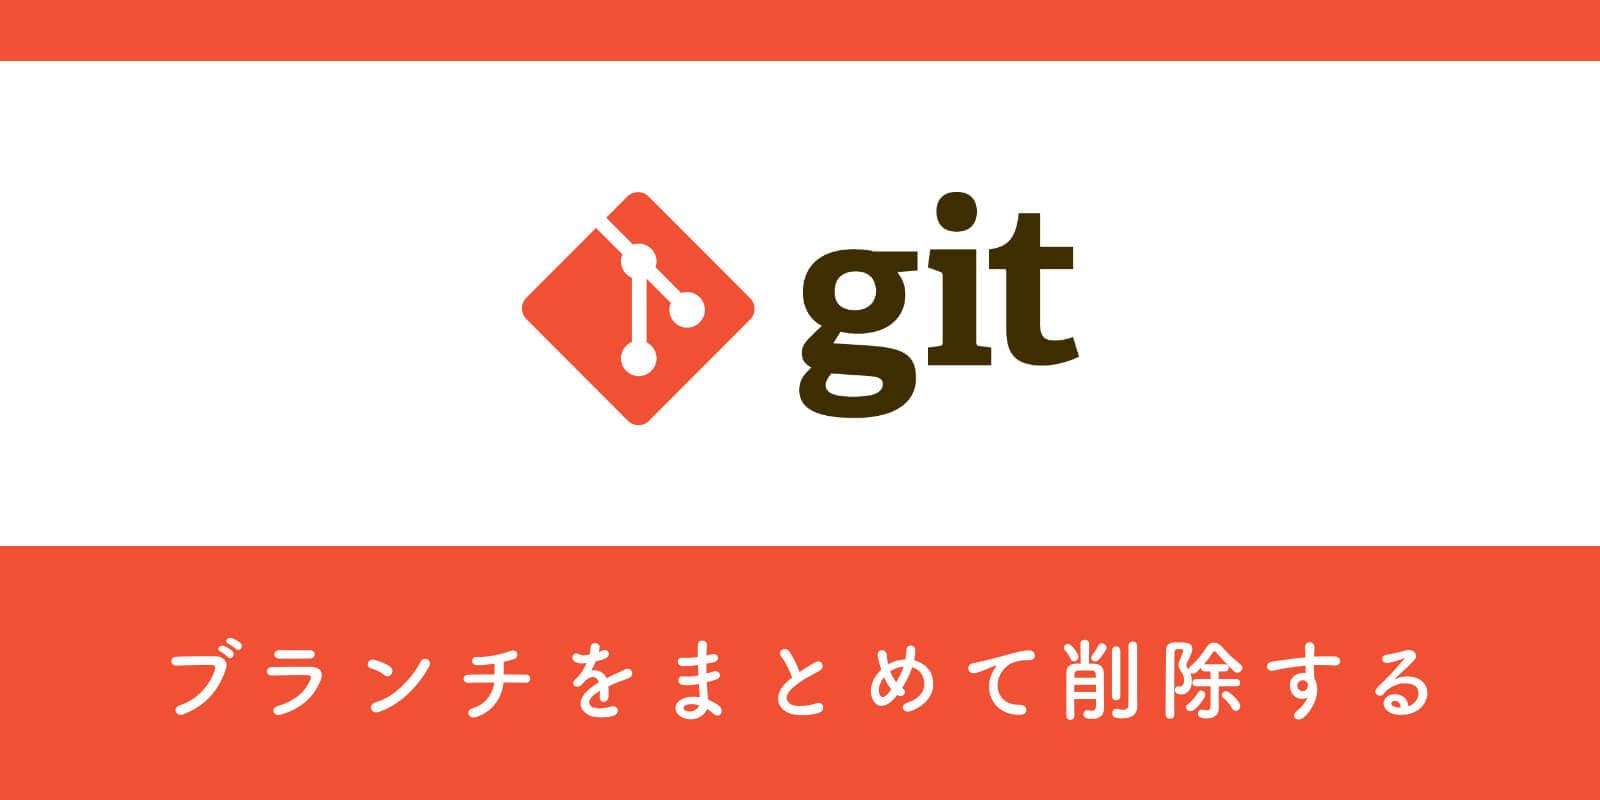 Git コマンド1つでマージ済みのブランチをまとめて削除